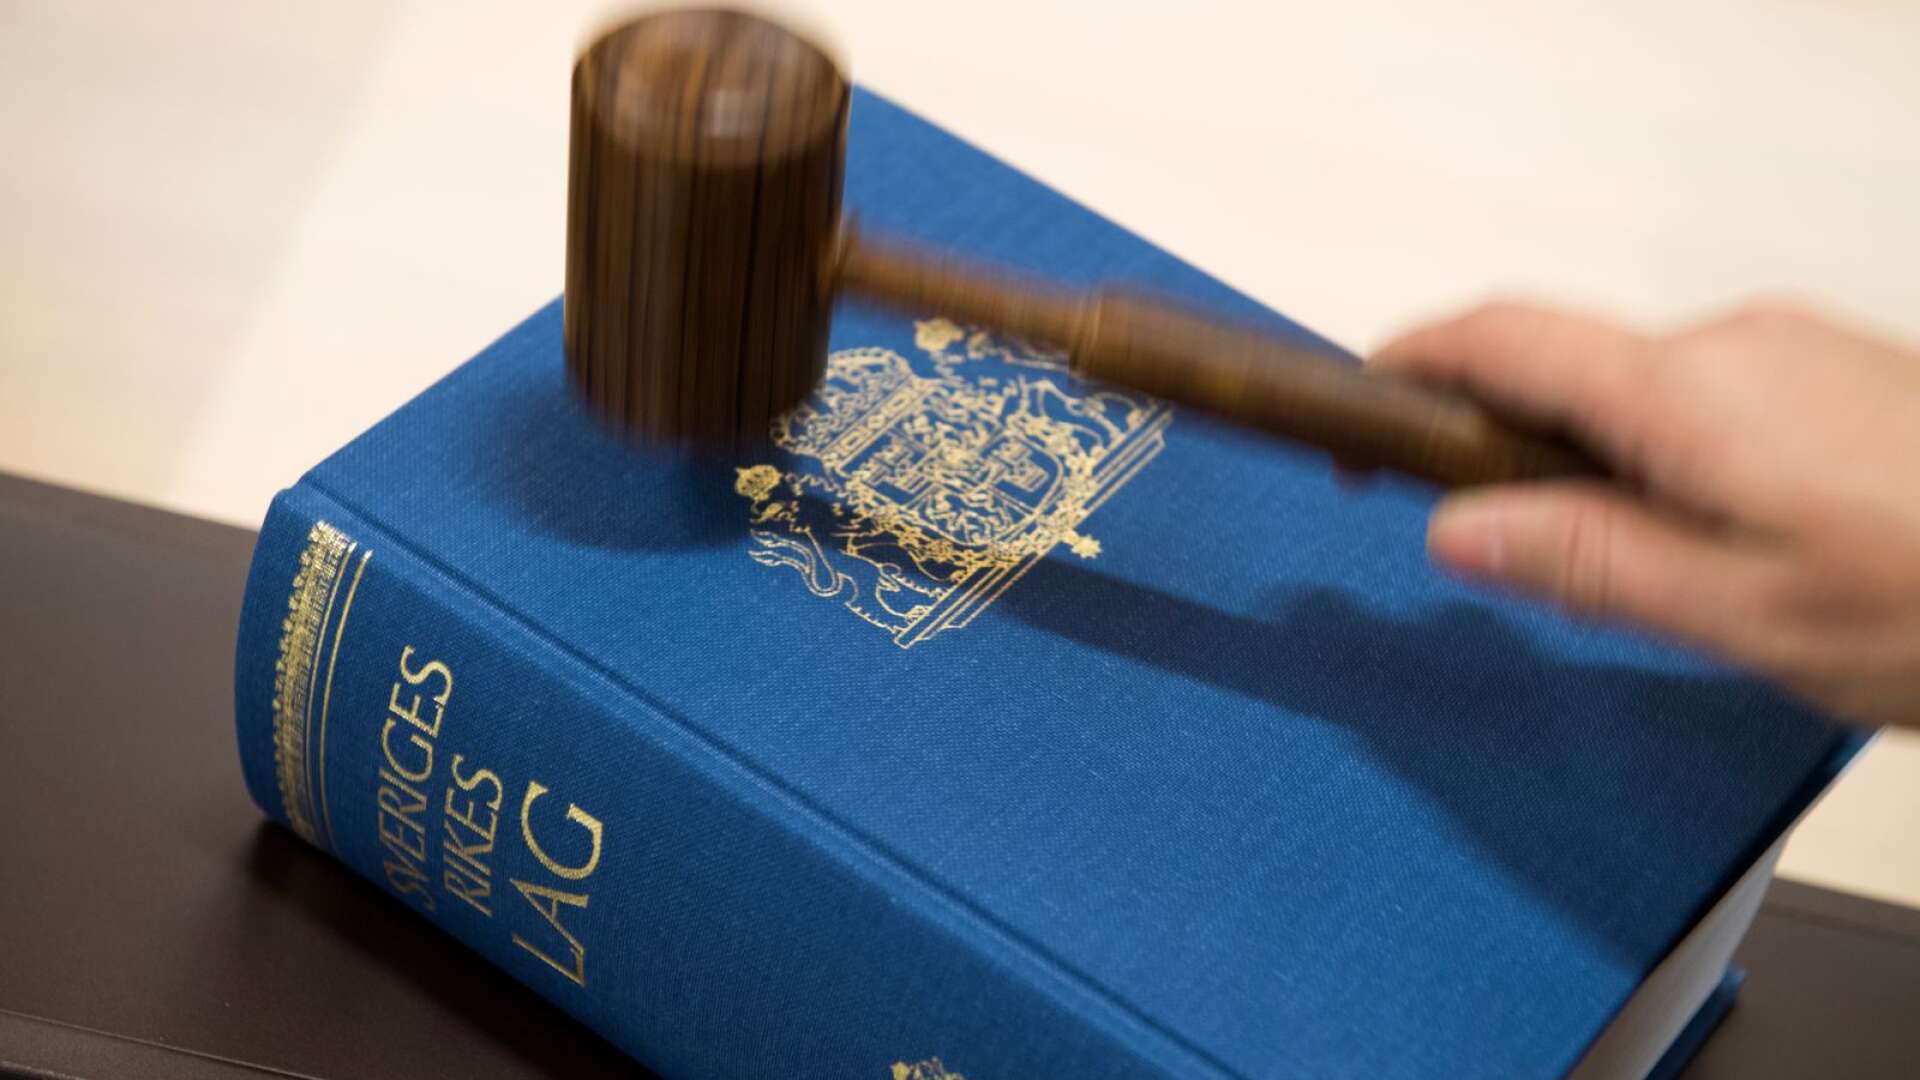 En person utan svenskt medborgarskap som begår grova brott bör normalt ha förbrukat sin rätt att vistas i landet.